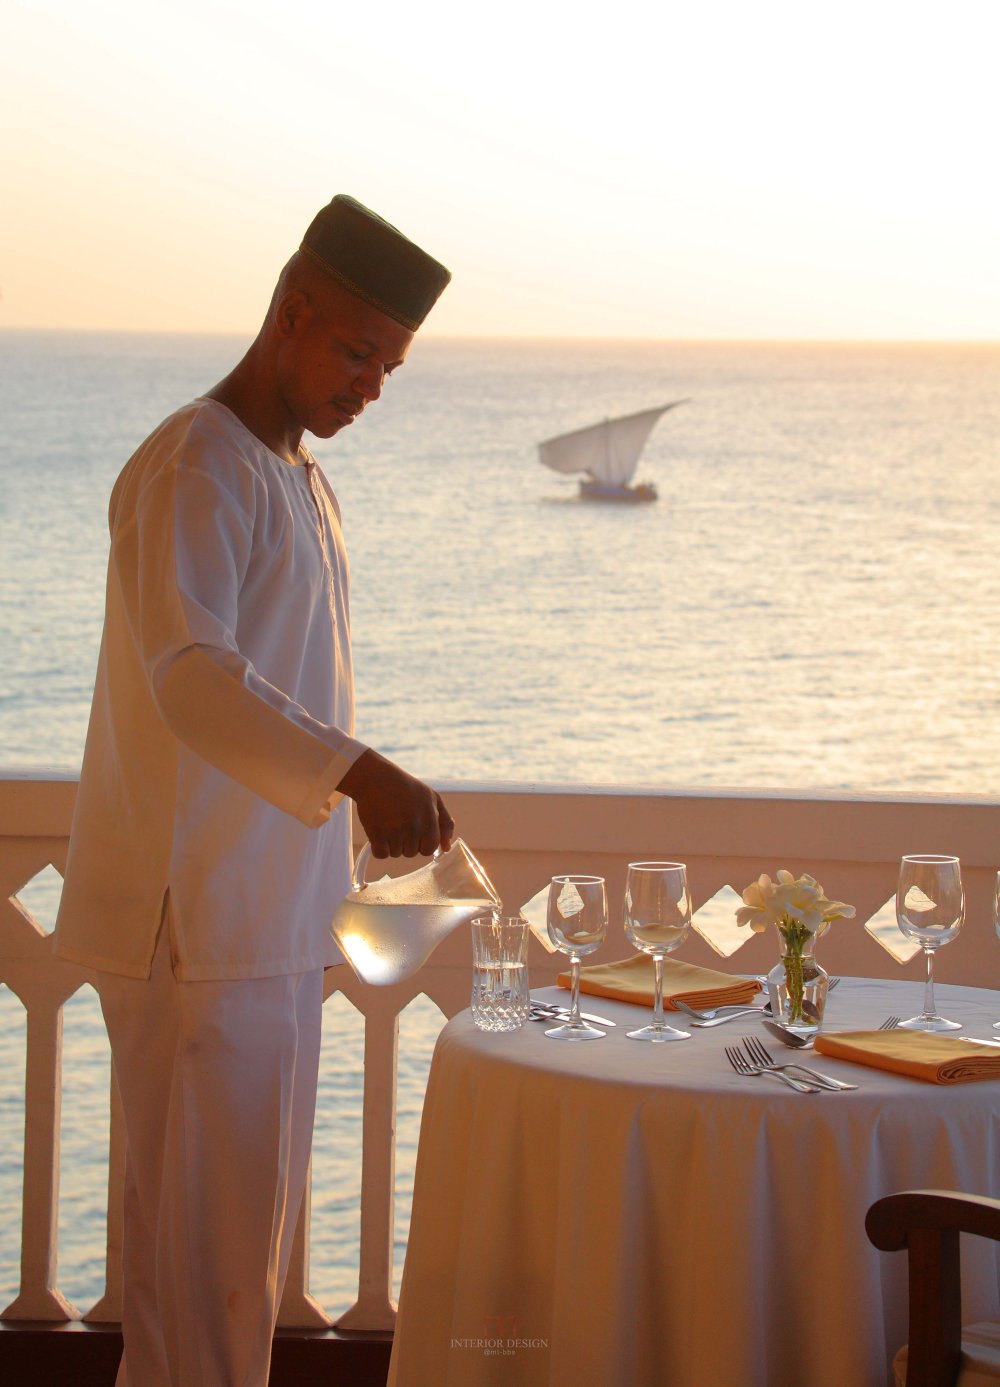 桑吉巴尔岛瑟瑞娜度假酒店 Zanzibar Serena Inn_49854027-H1-Zanzibar_Serena_Inn_2012-252.jpg